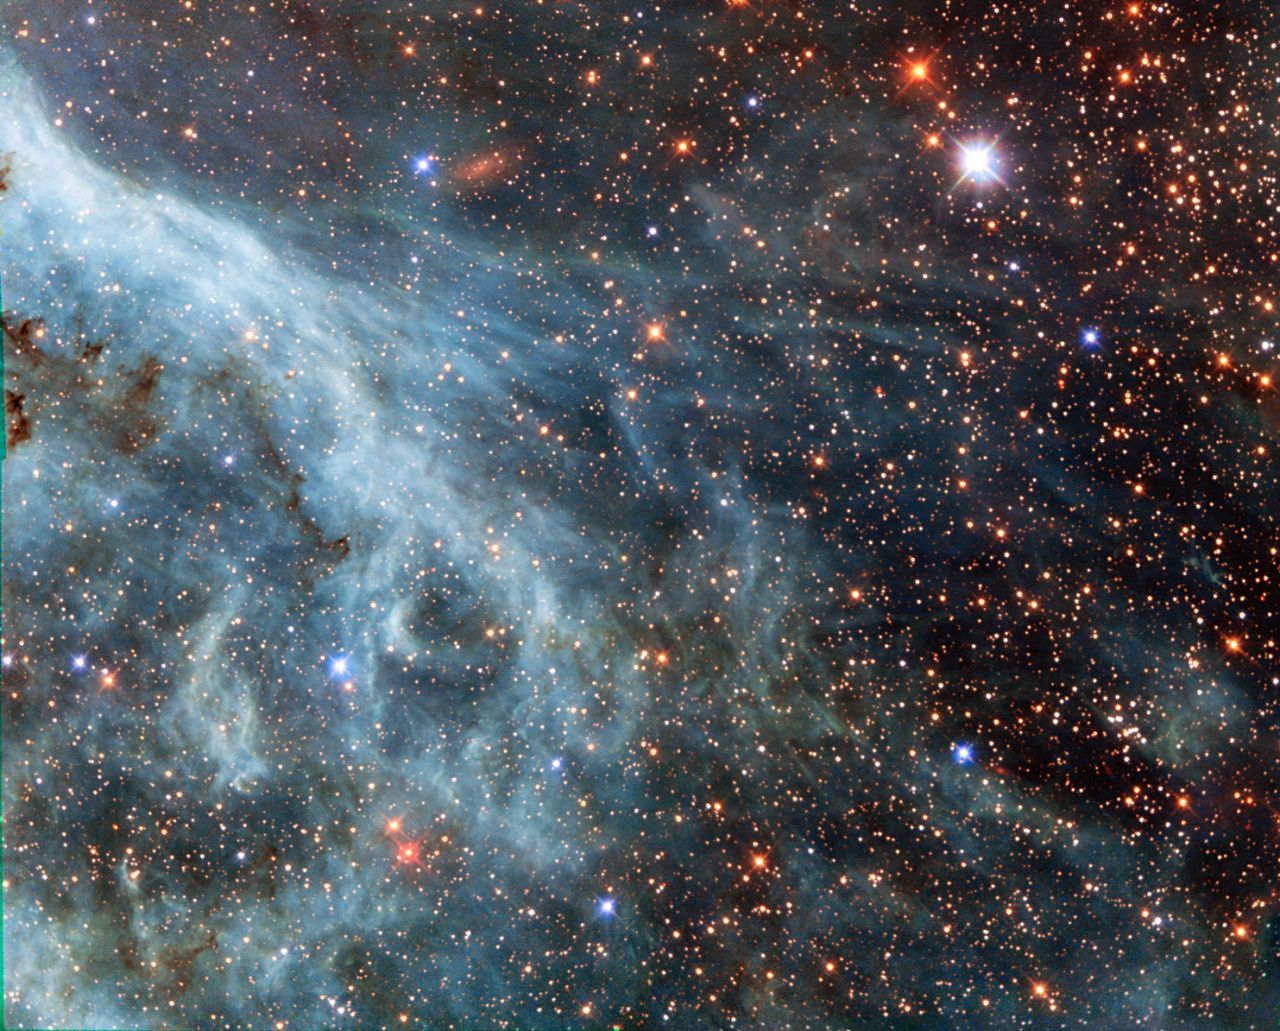 Die "Große Magellansche Wolke" ist eine Galaxie, die nicht unweit der Erde um die Milchstraße kreist. Aufgrund ihrer Nähe konnte Hubbe schon mehrfach detailierte Aufnahmen der Galaxie machen. 